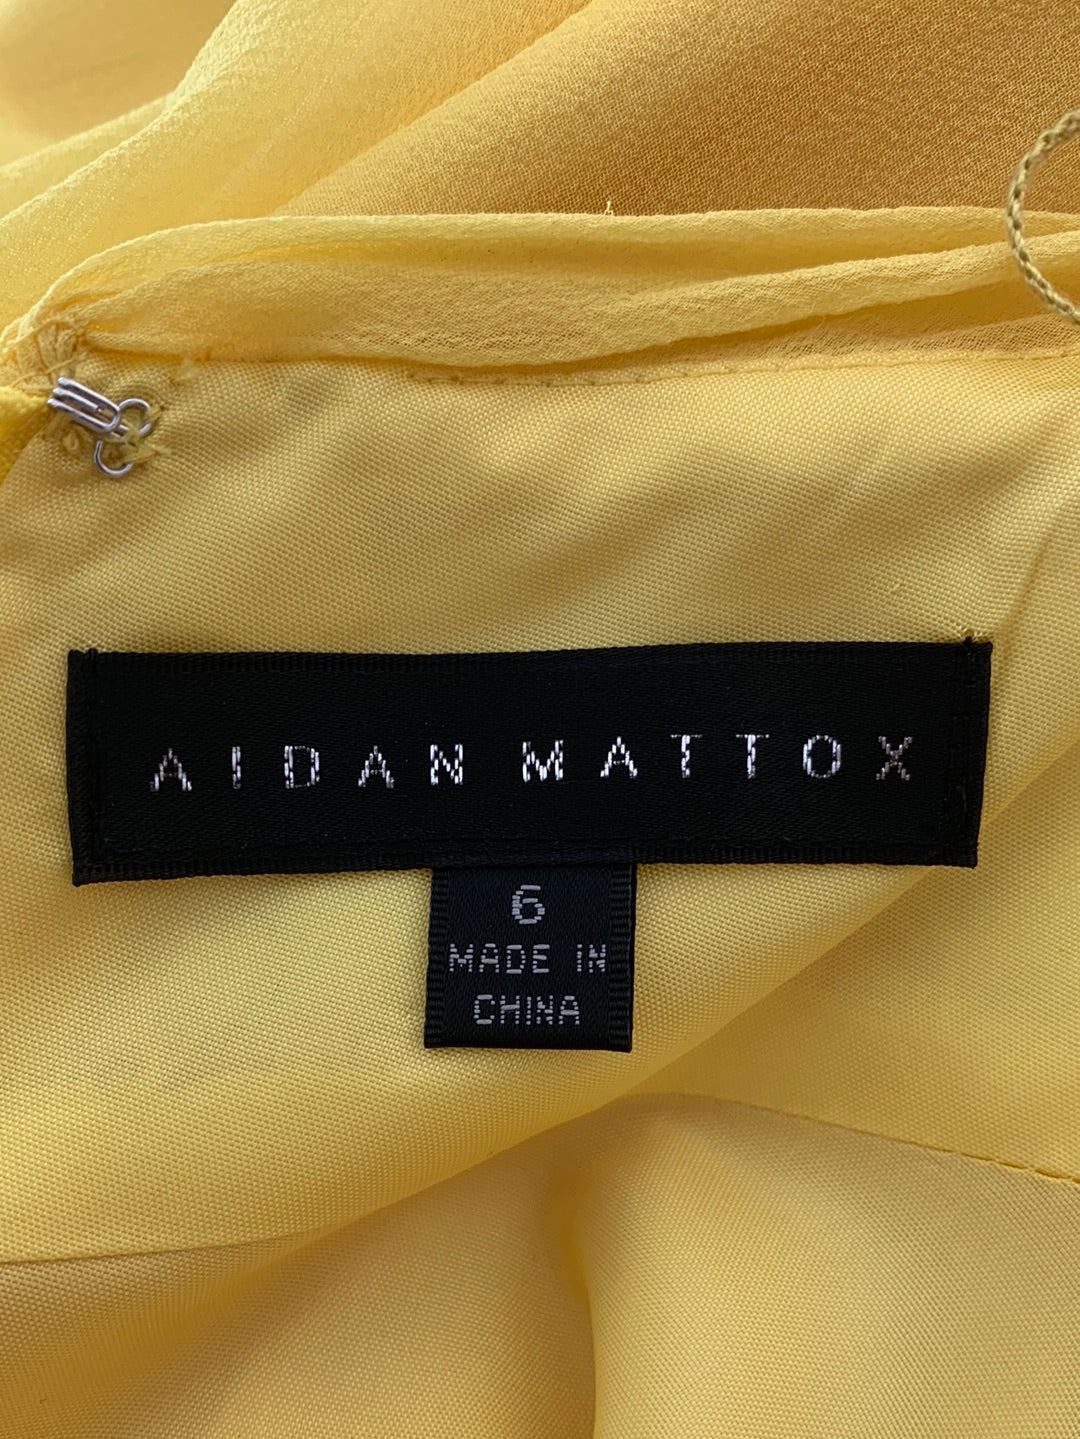 AIDAN MATTOX yellow beaded formal SILK Gown Dress - 6